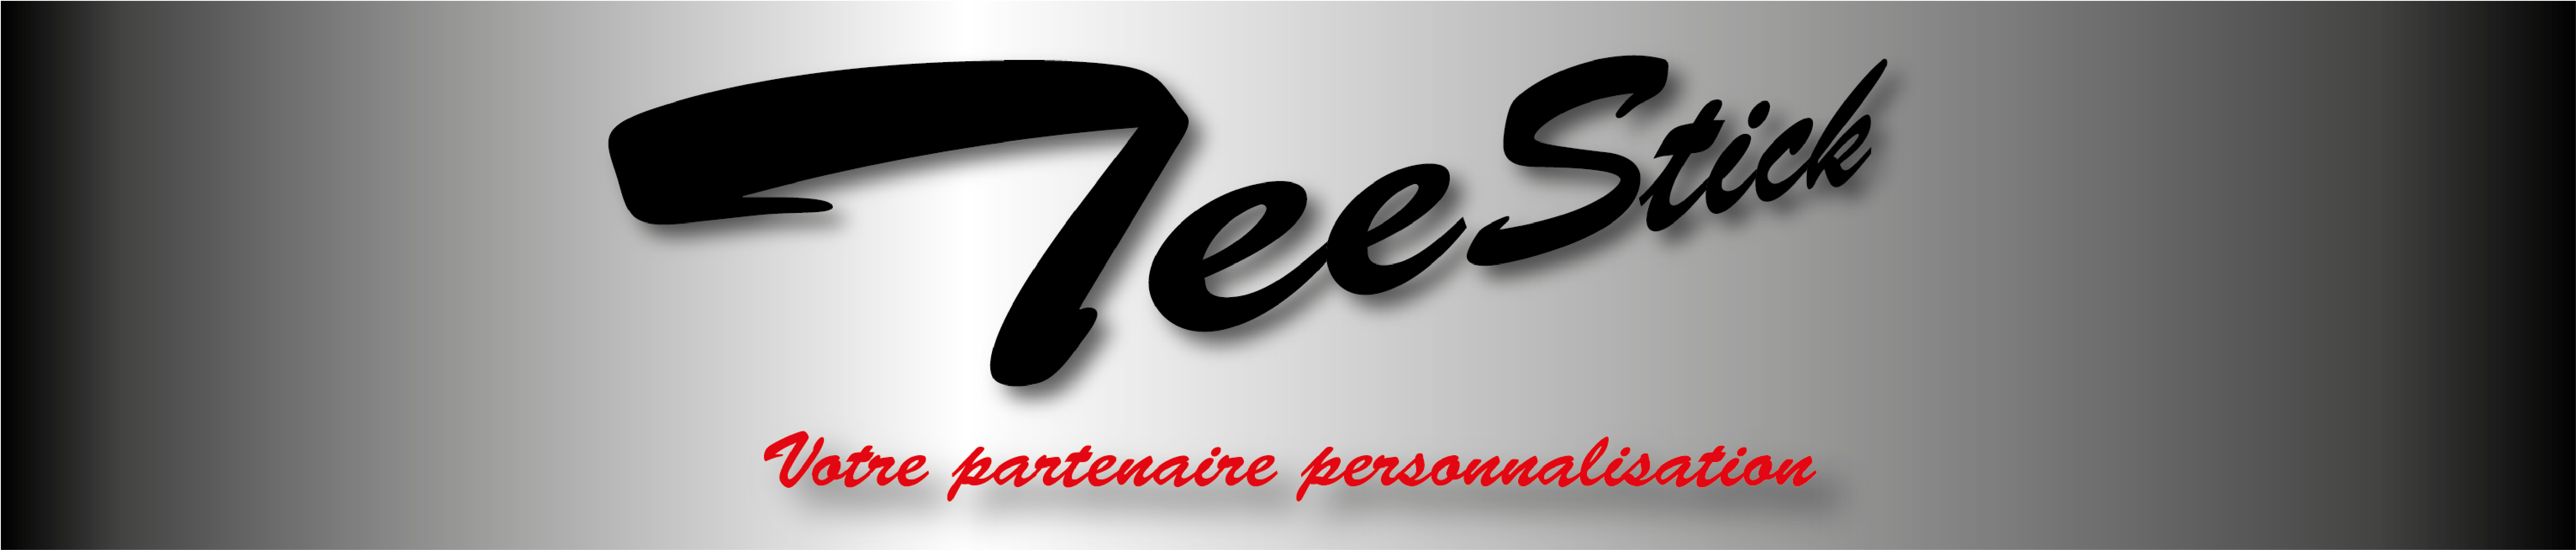 logo-www.teestick.fr